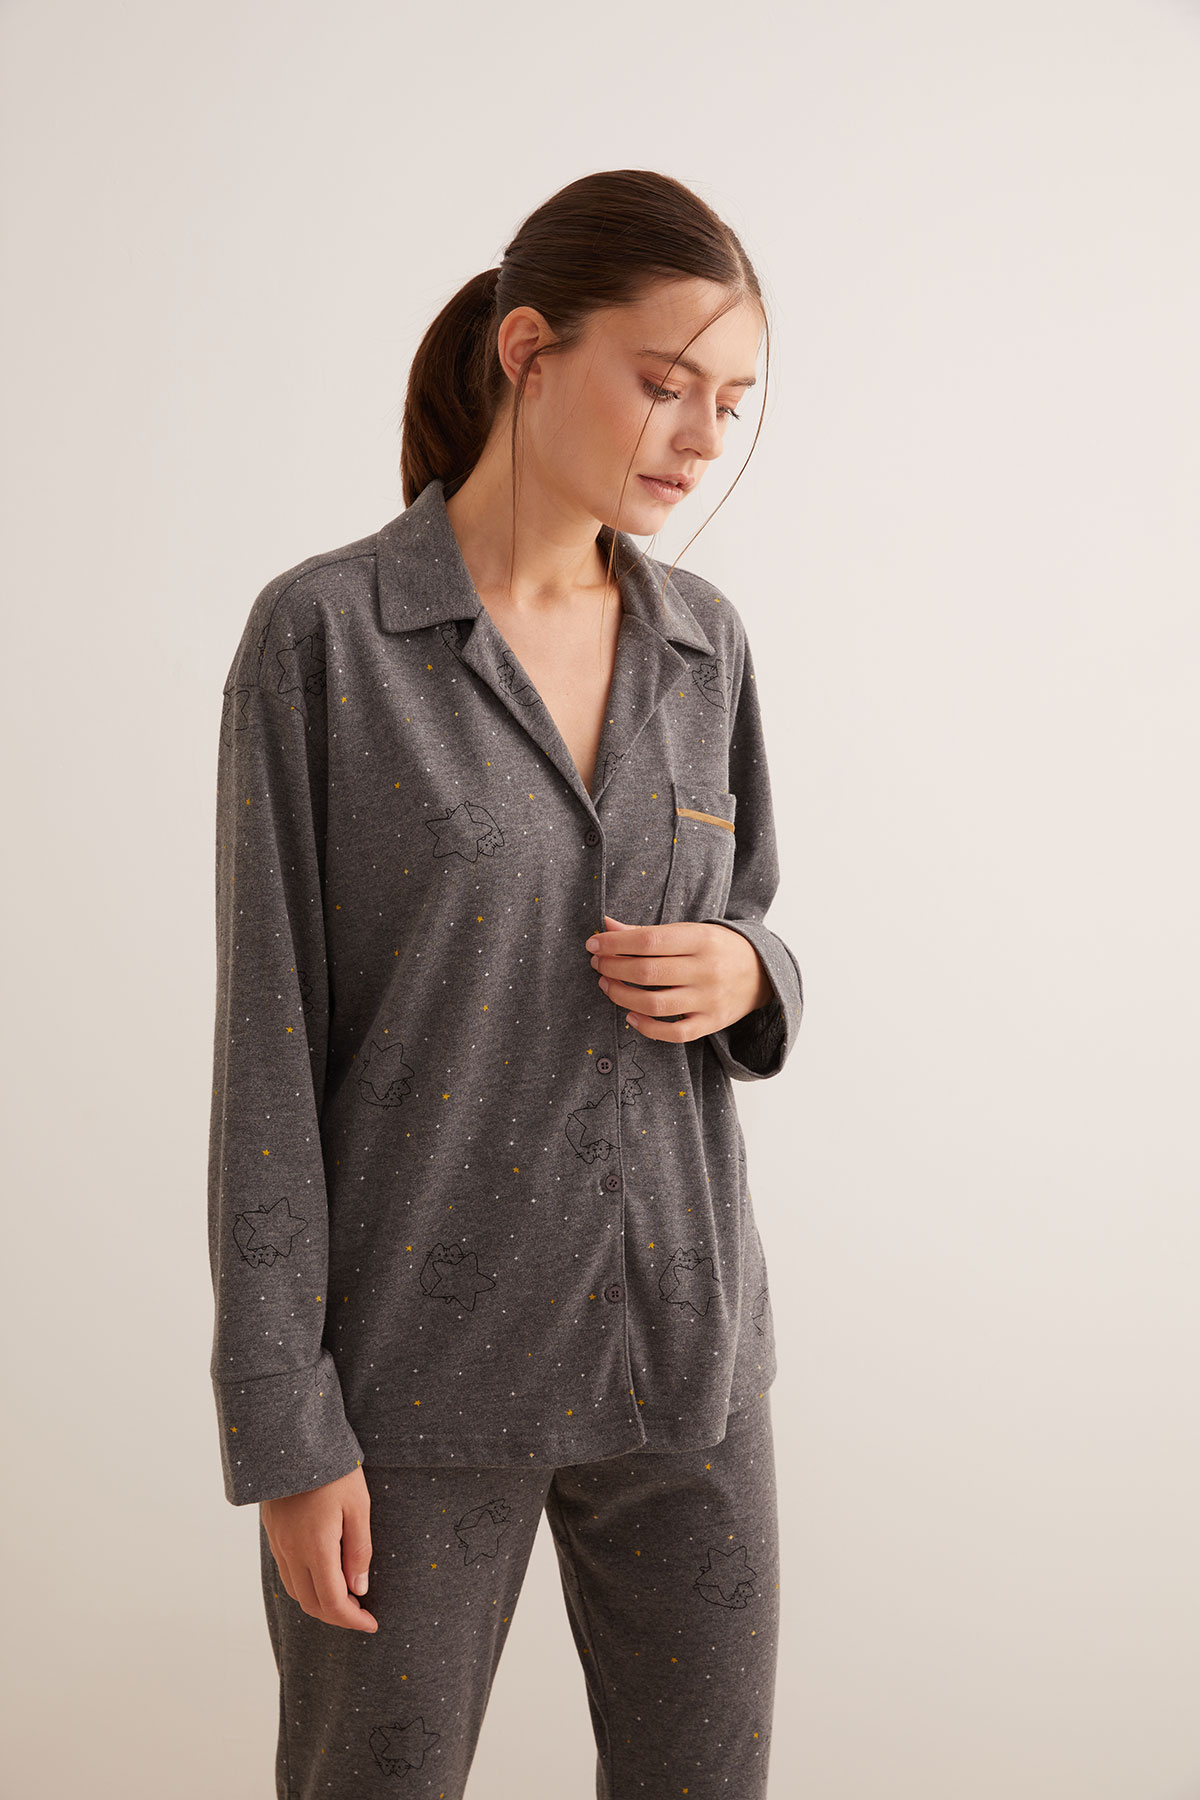 Kadın Gömlek Yaka Kontrast Biye Detaylı Pijama Üstü